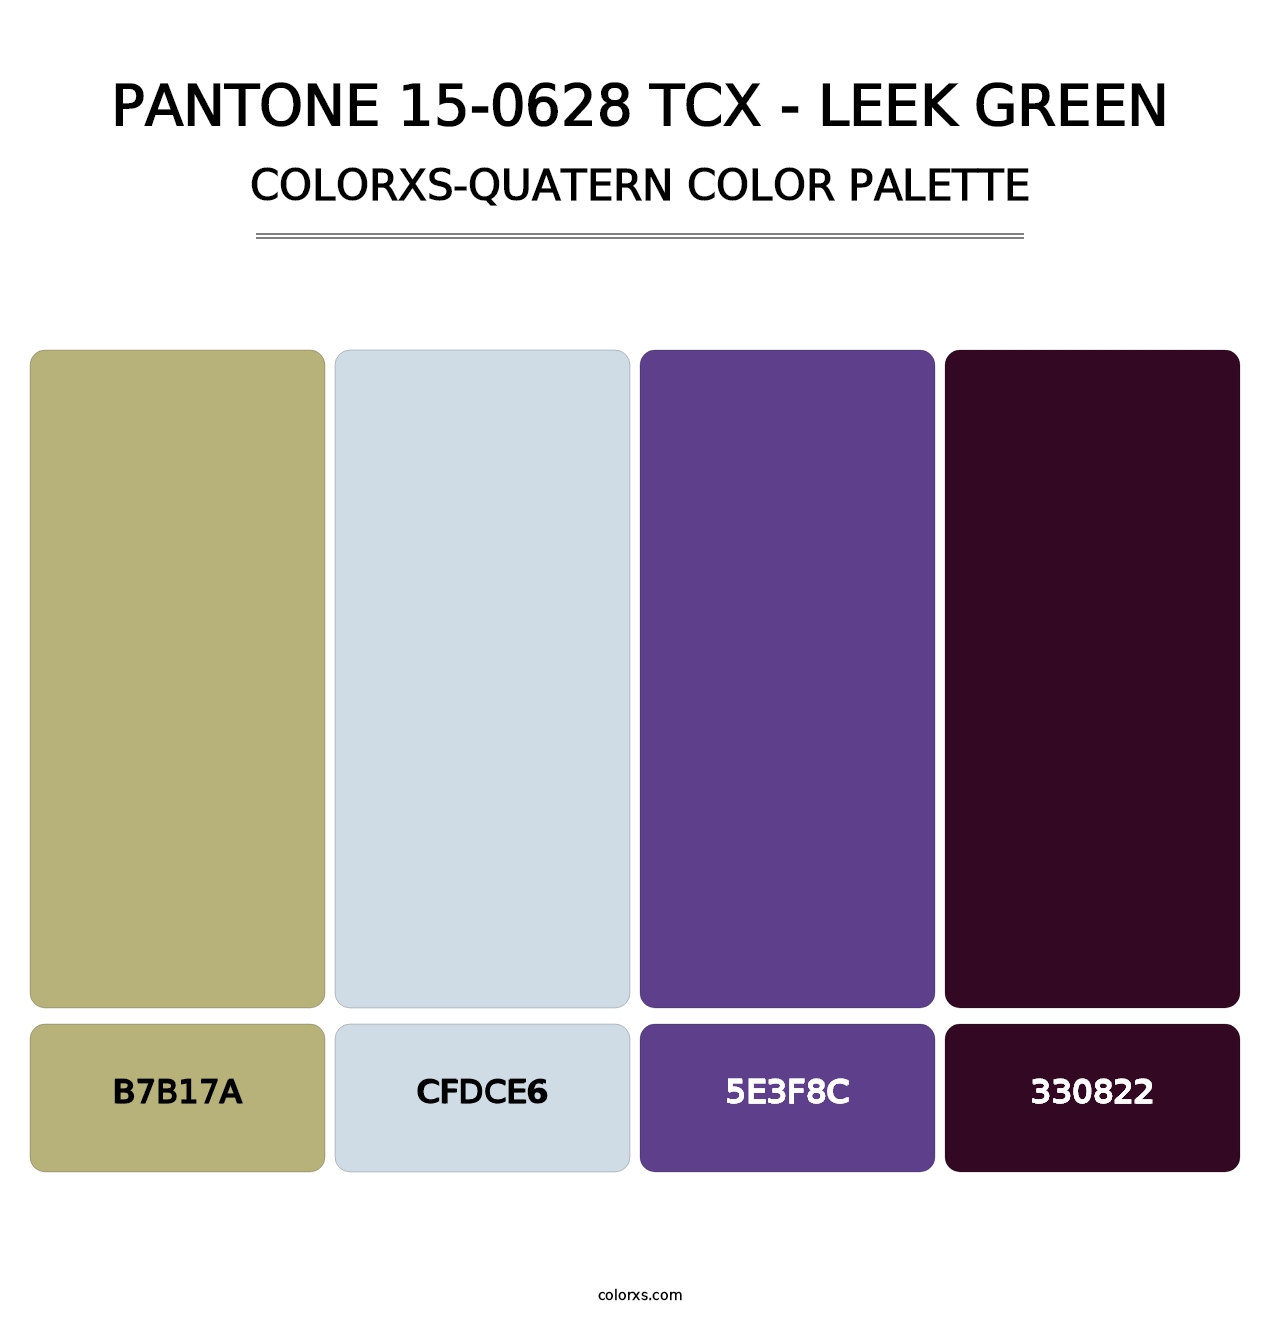 PANTONE 15-0628 TCX - Leek Green - Colorxs Quatern Palette